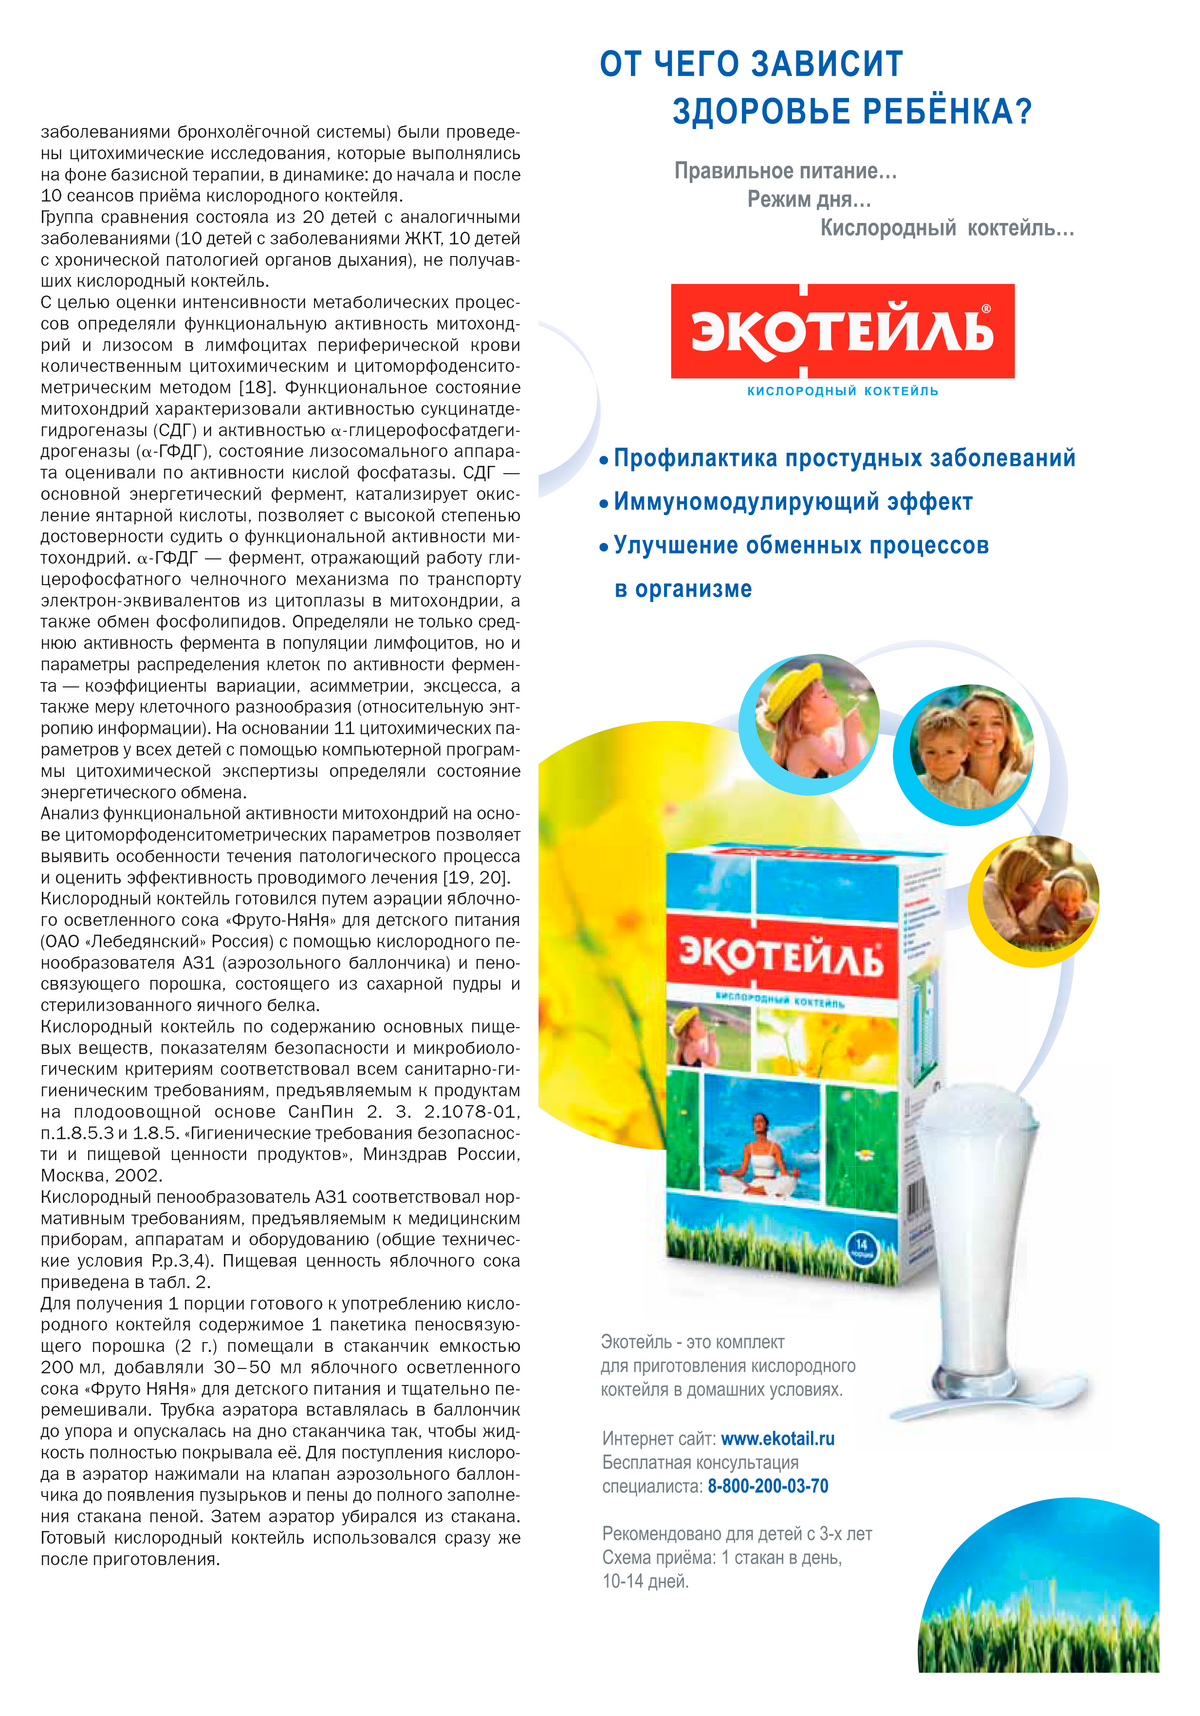 В типичной российской статье о пользе кислородных коктейлей реклама этого продукта размещена прямо в тексте. Источник: «Киберленинка»